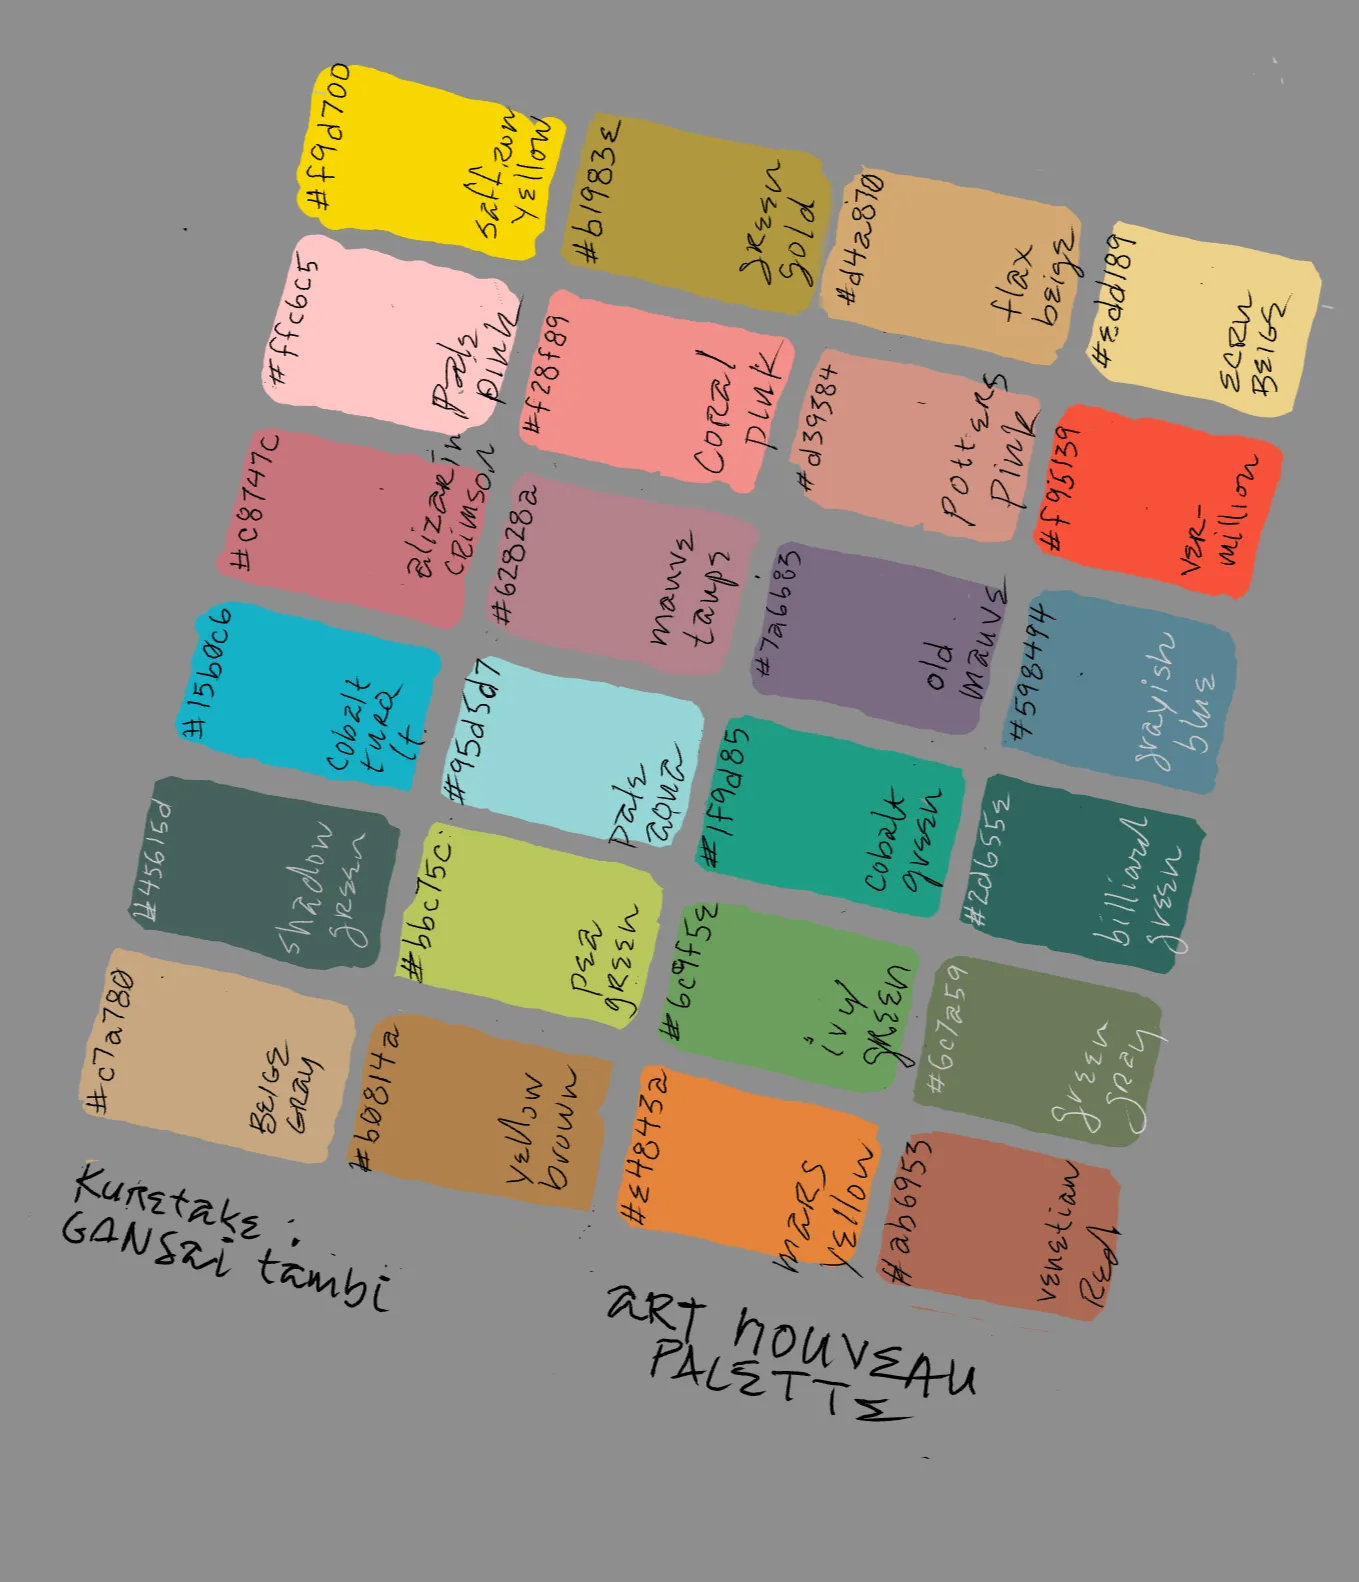 Art nouveau palette - 24 colors